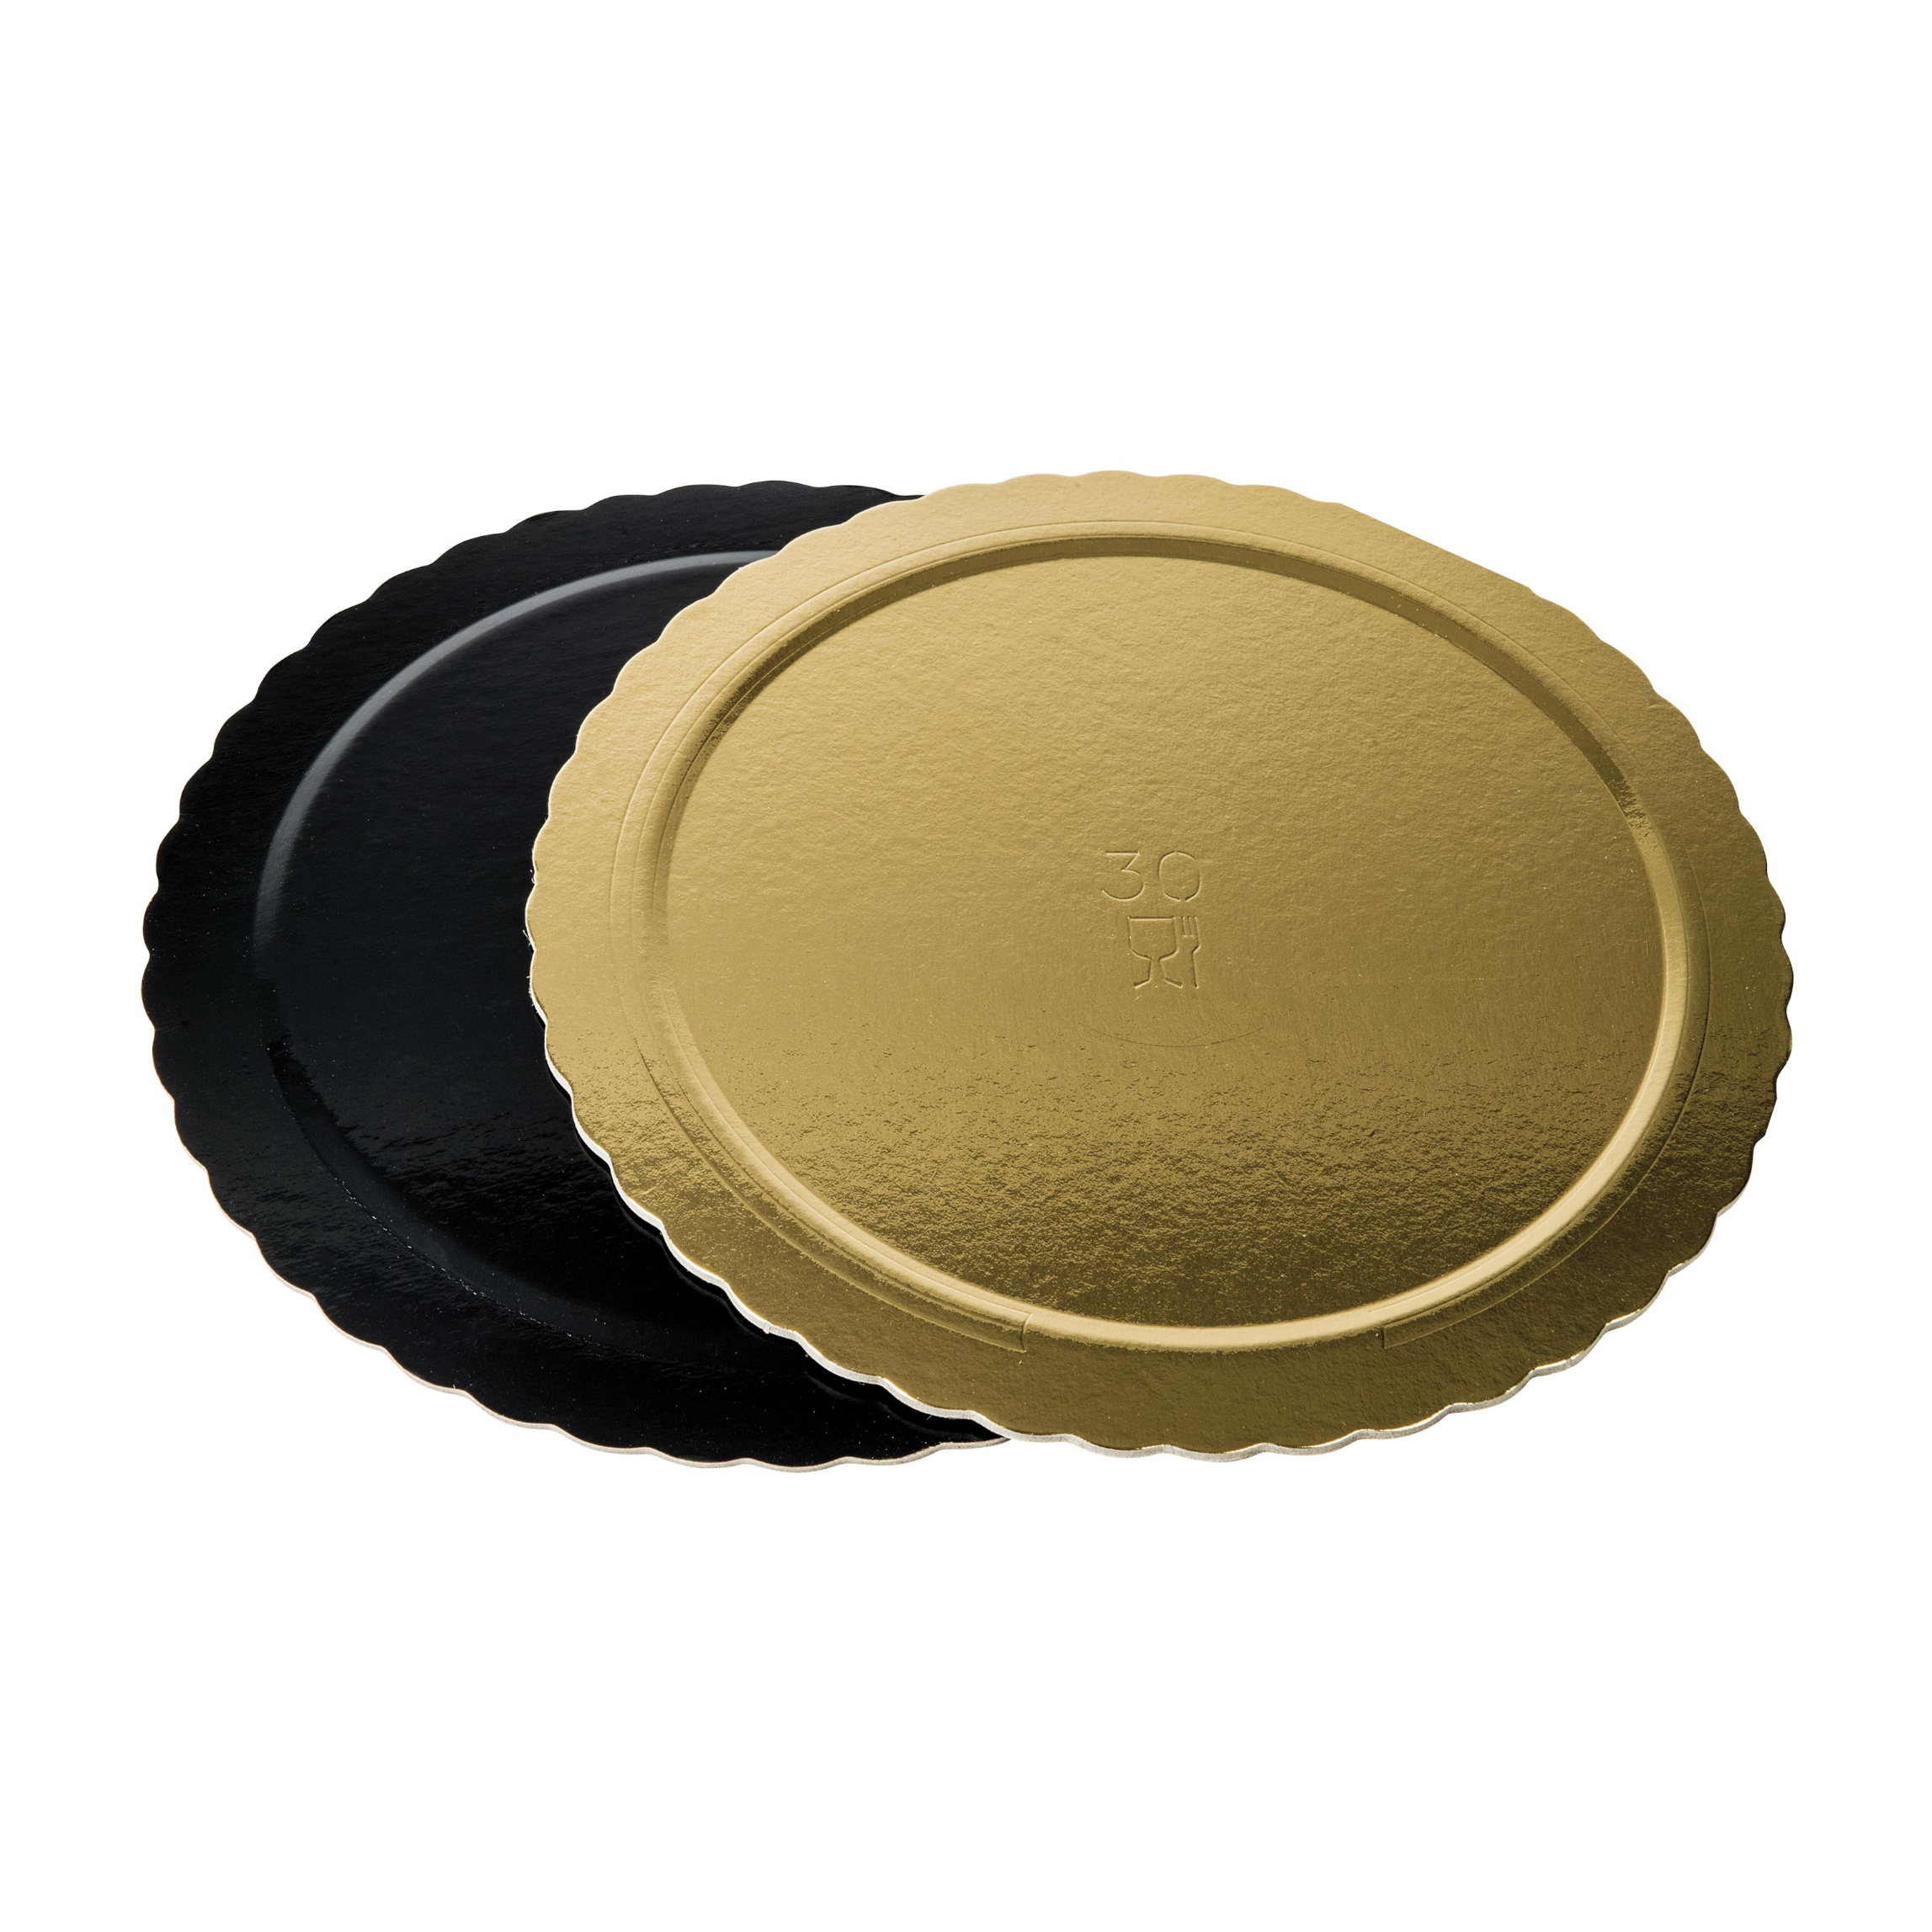 Dischi sottotorta kappati oro/nero 30cm pacchetto da 10kg